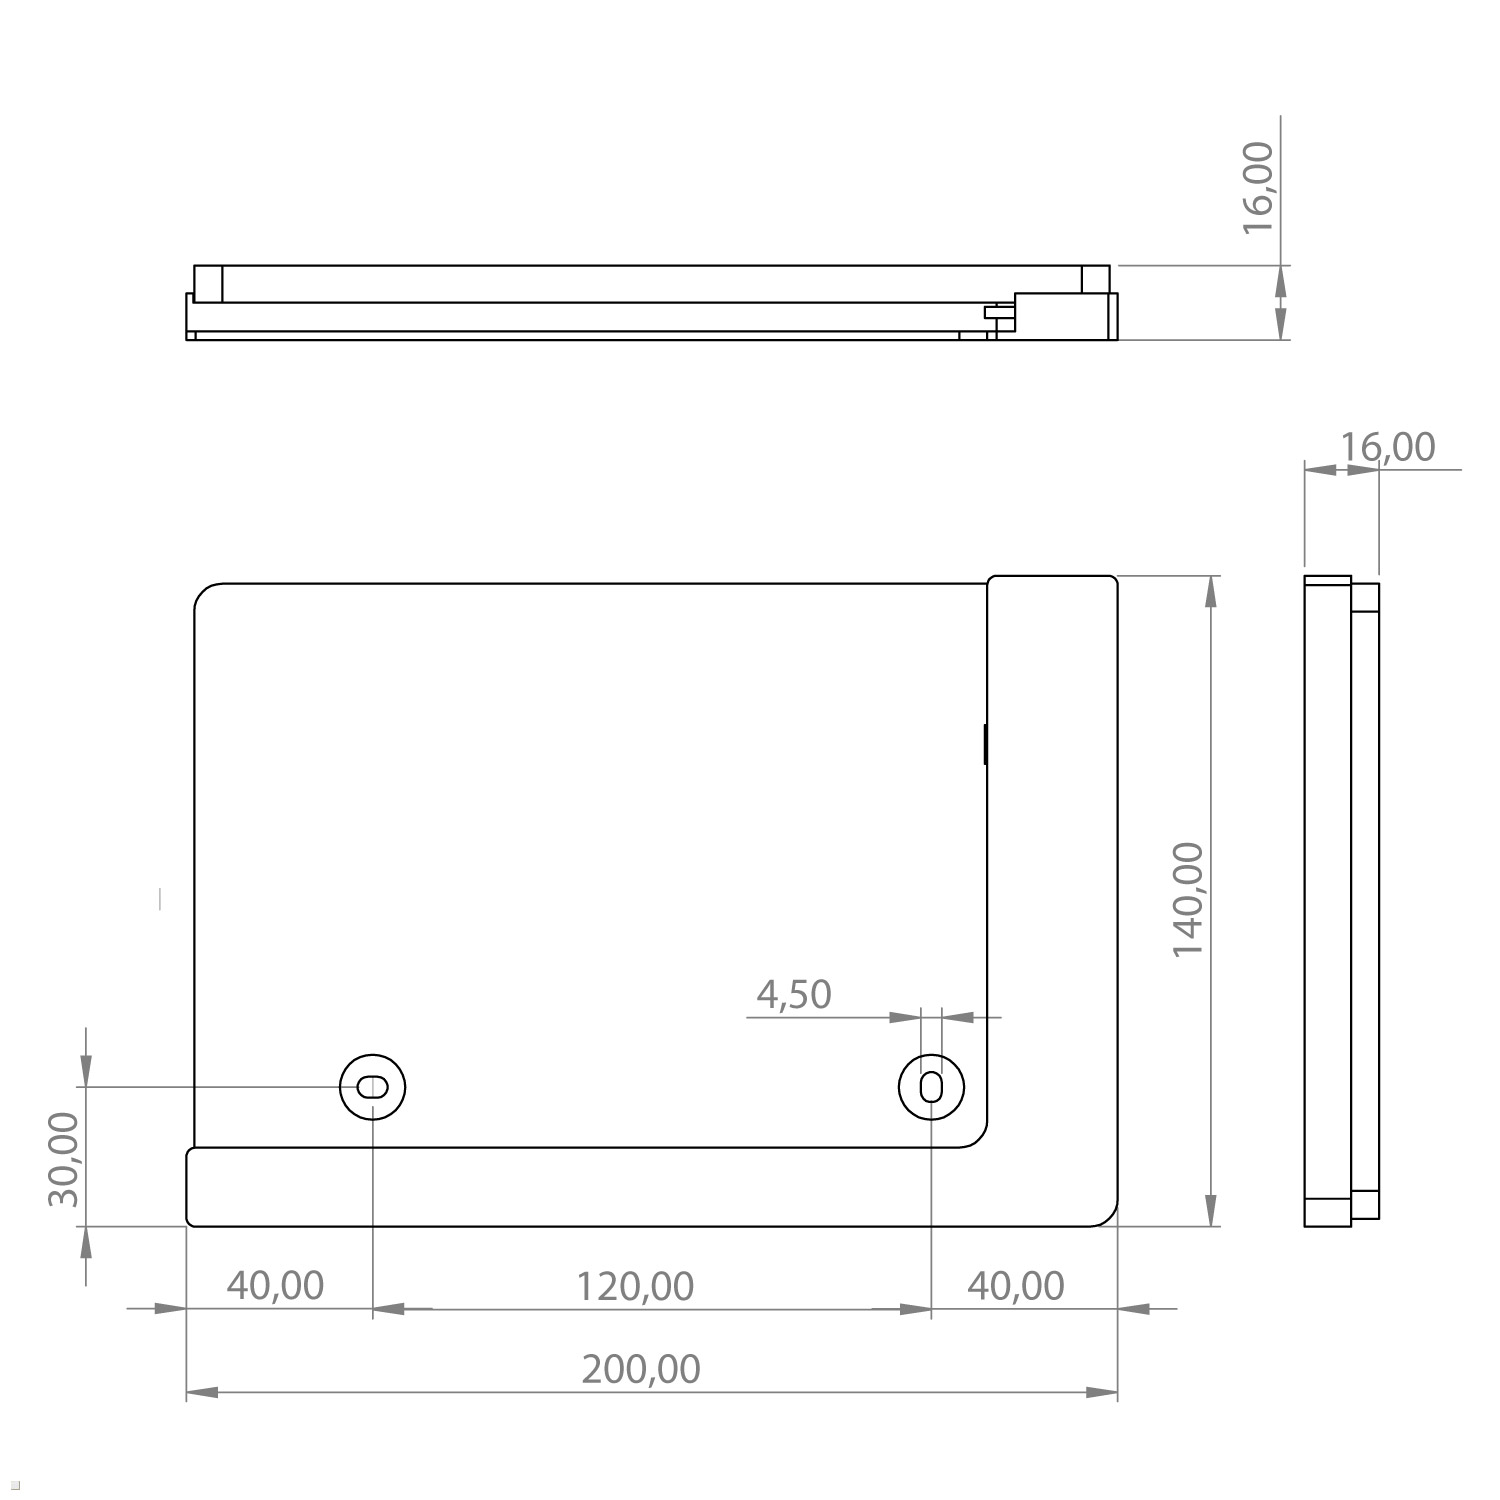 Tablethalter TWP Wandhalterung, Tablet mit für Tab TABLINES 12.4 Samsung S7+ schwarz Ladefunktion